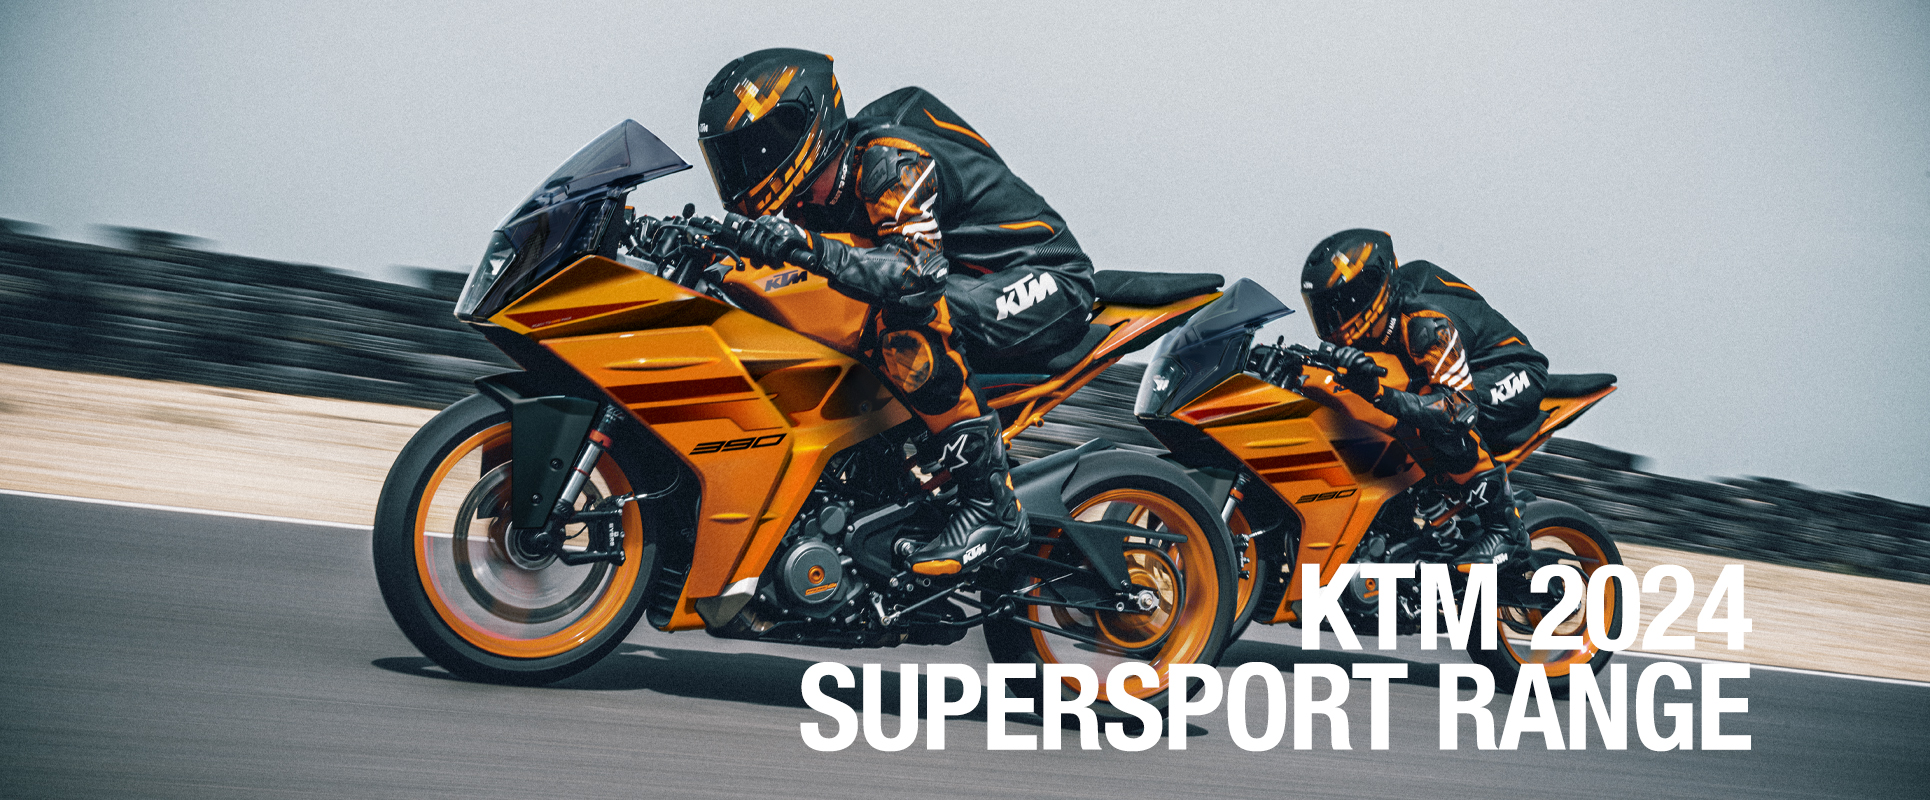 31/01/2024 - KTM UPDATES ITS SUPERSPORT RANGE